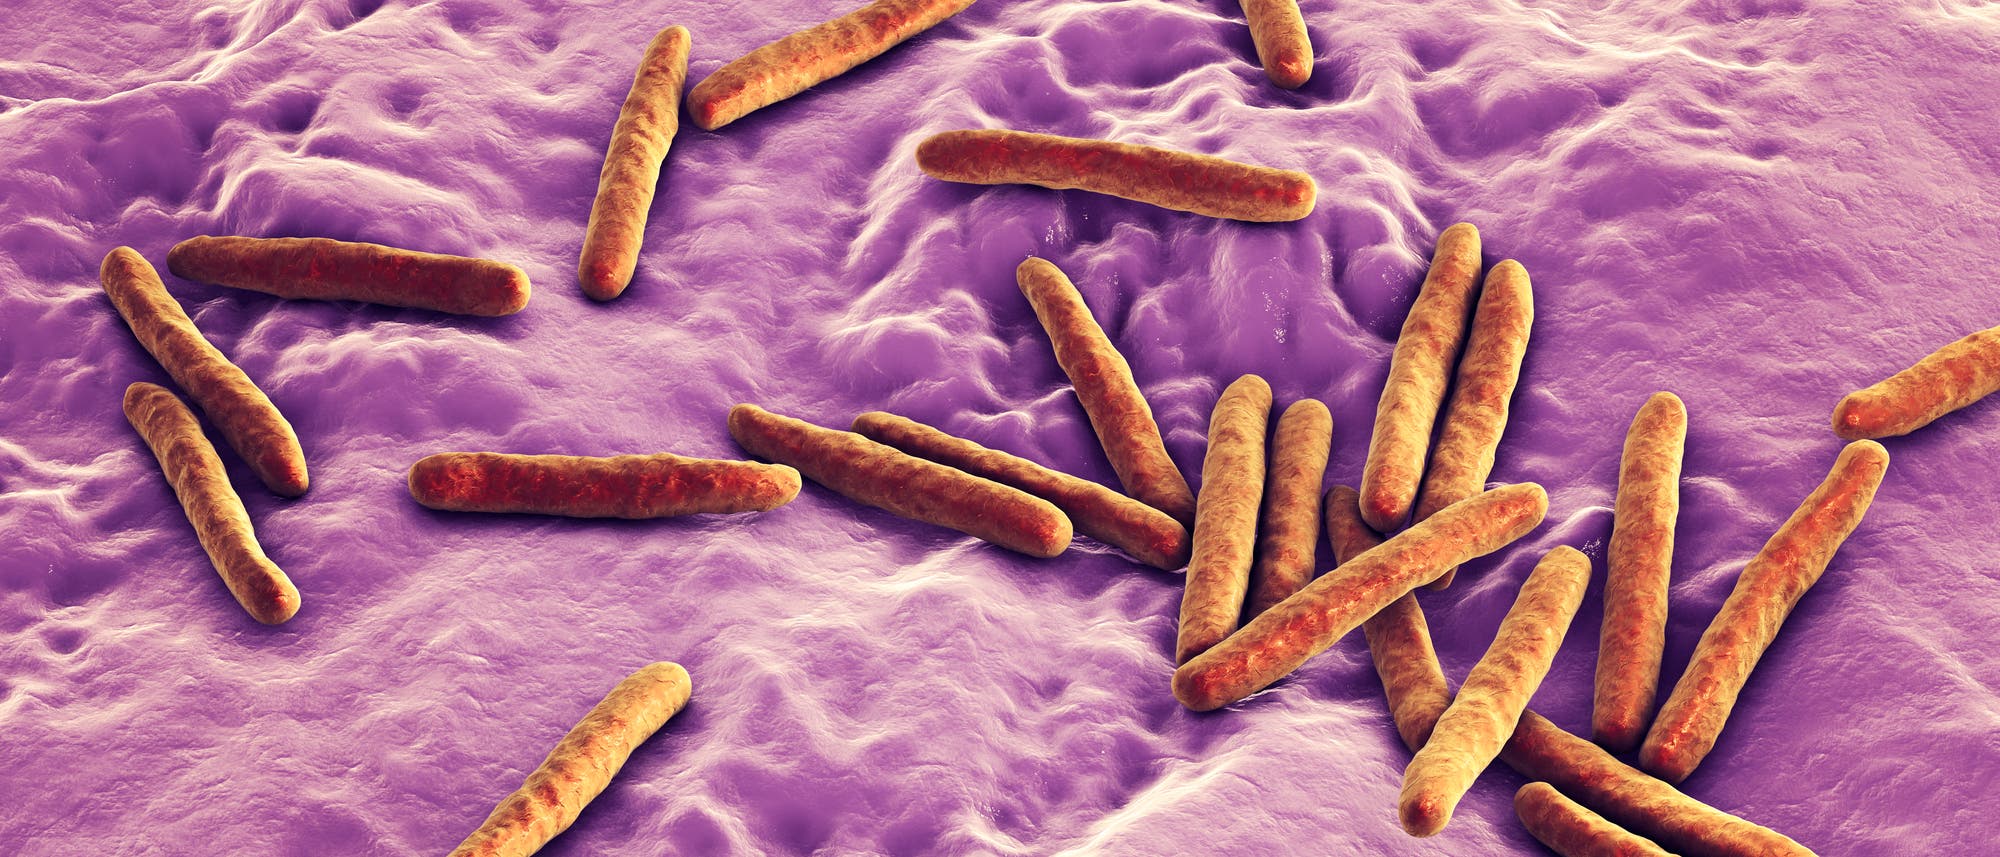 Stäbchenförmige Bakterien sorgen für Tuberkulose.